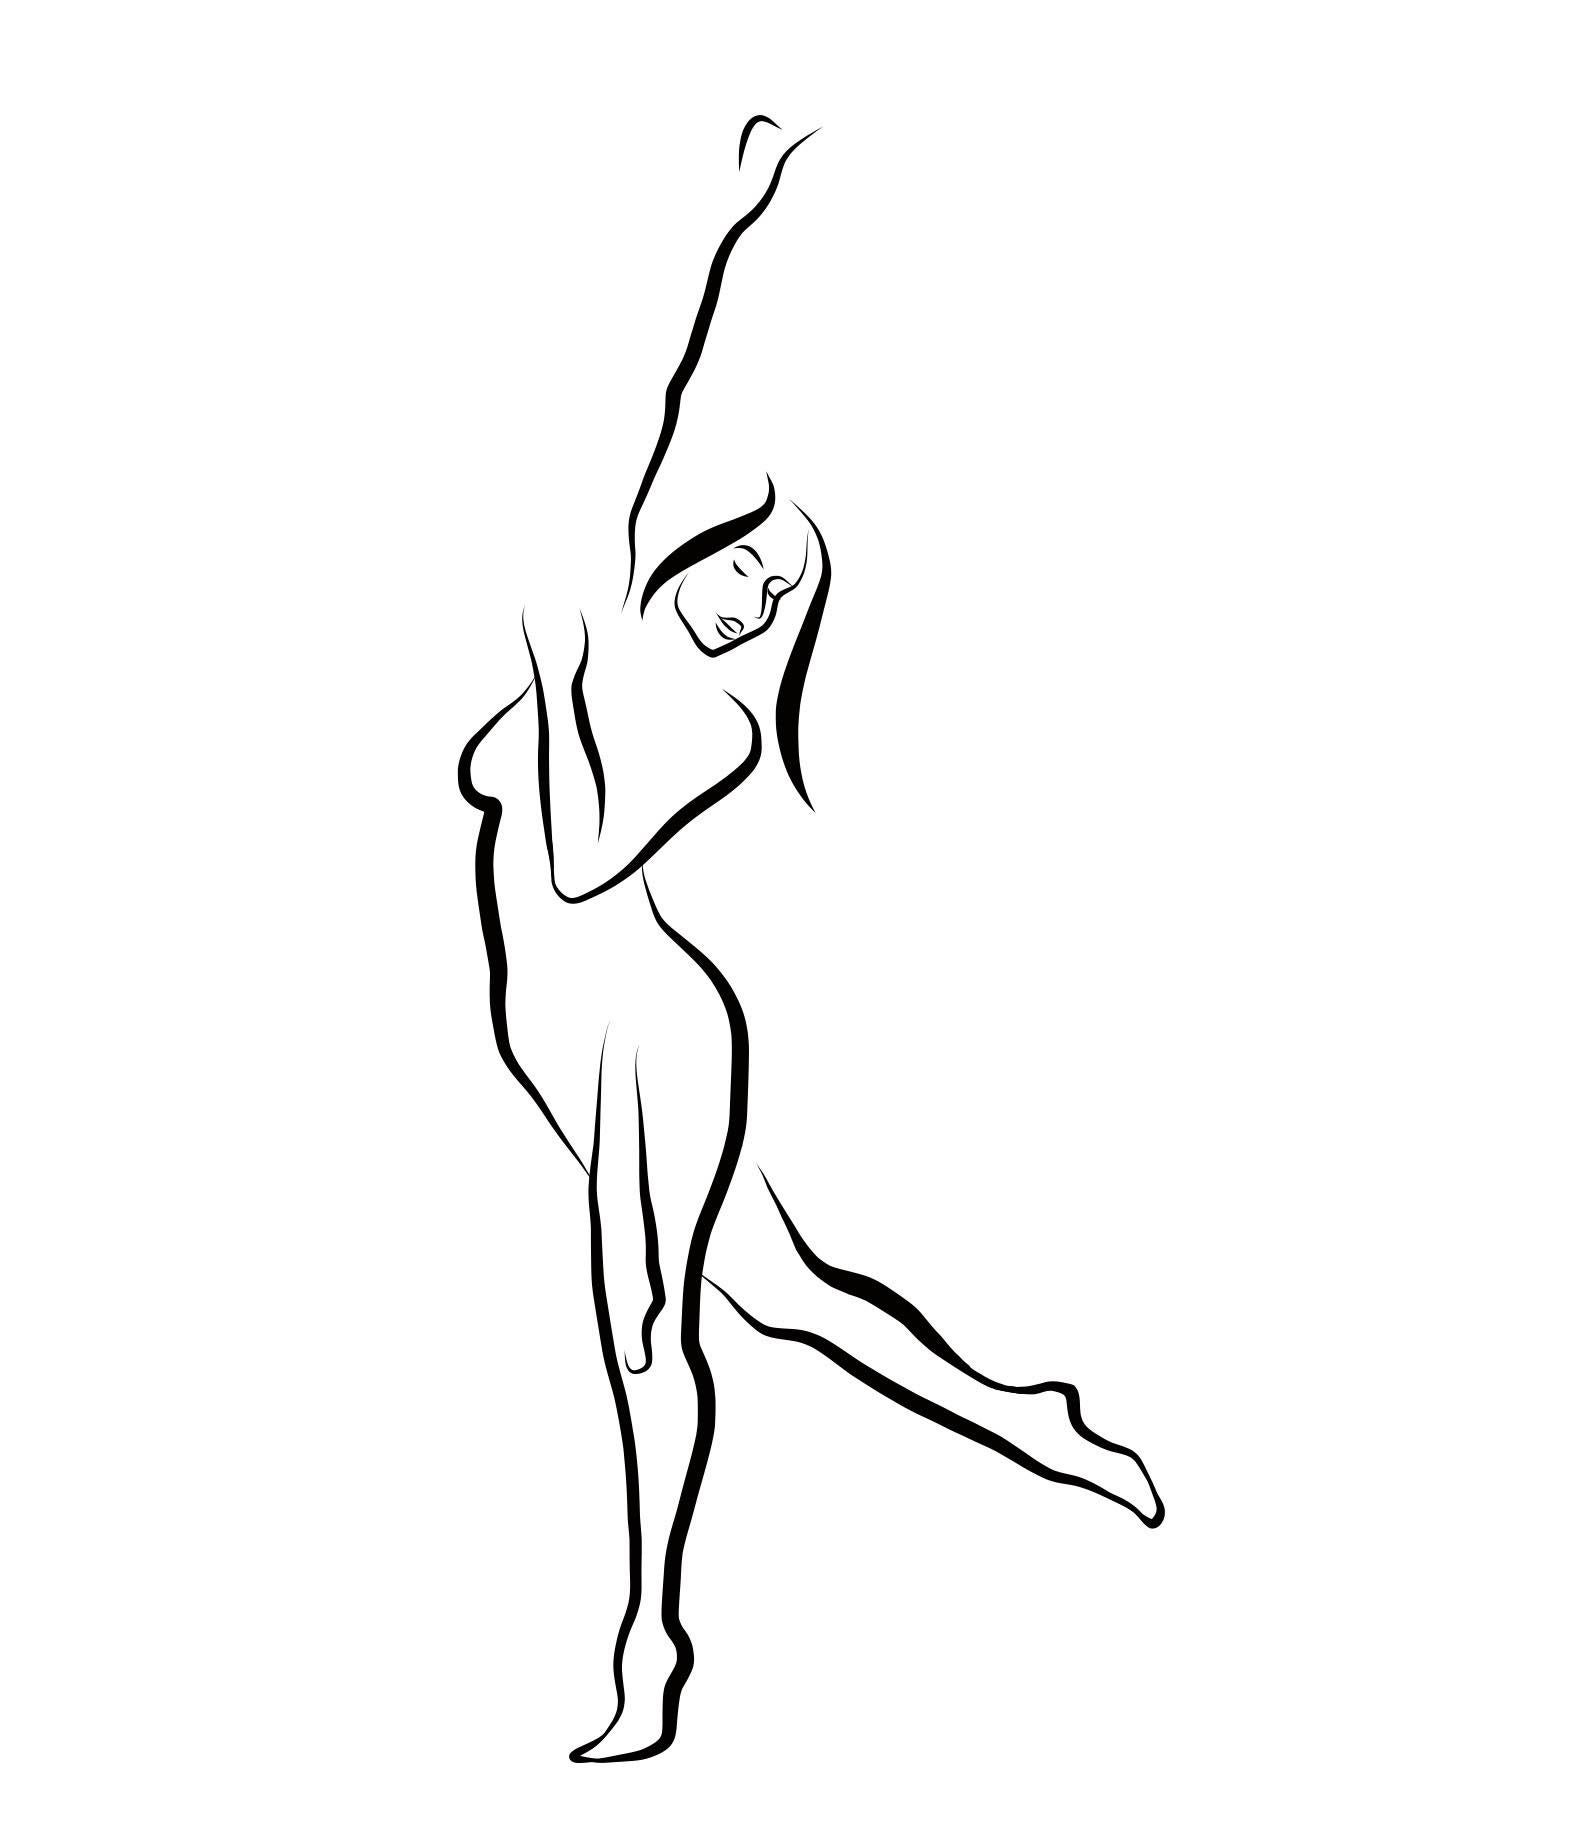 Michael Binkley Nude Print - Haiku #24, 1/50 - Digital Vector Drawing Dancing Female Nude Woman Figure Arm Up